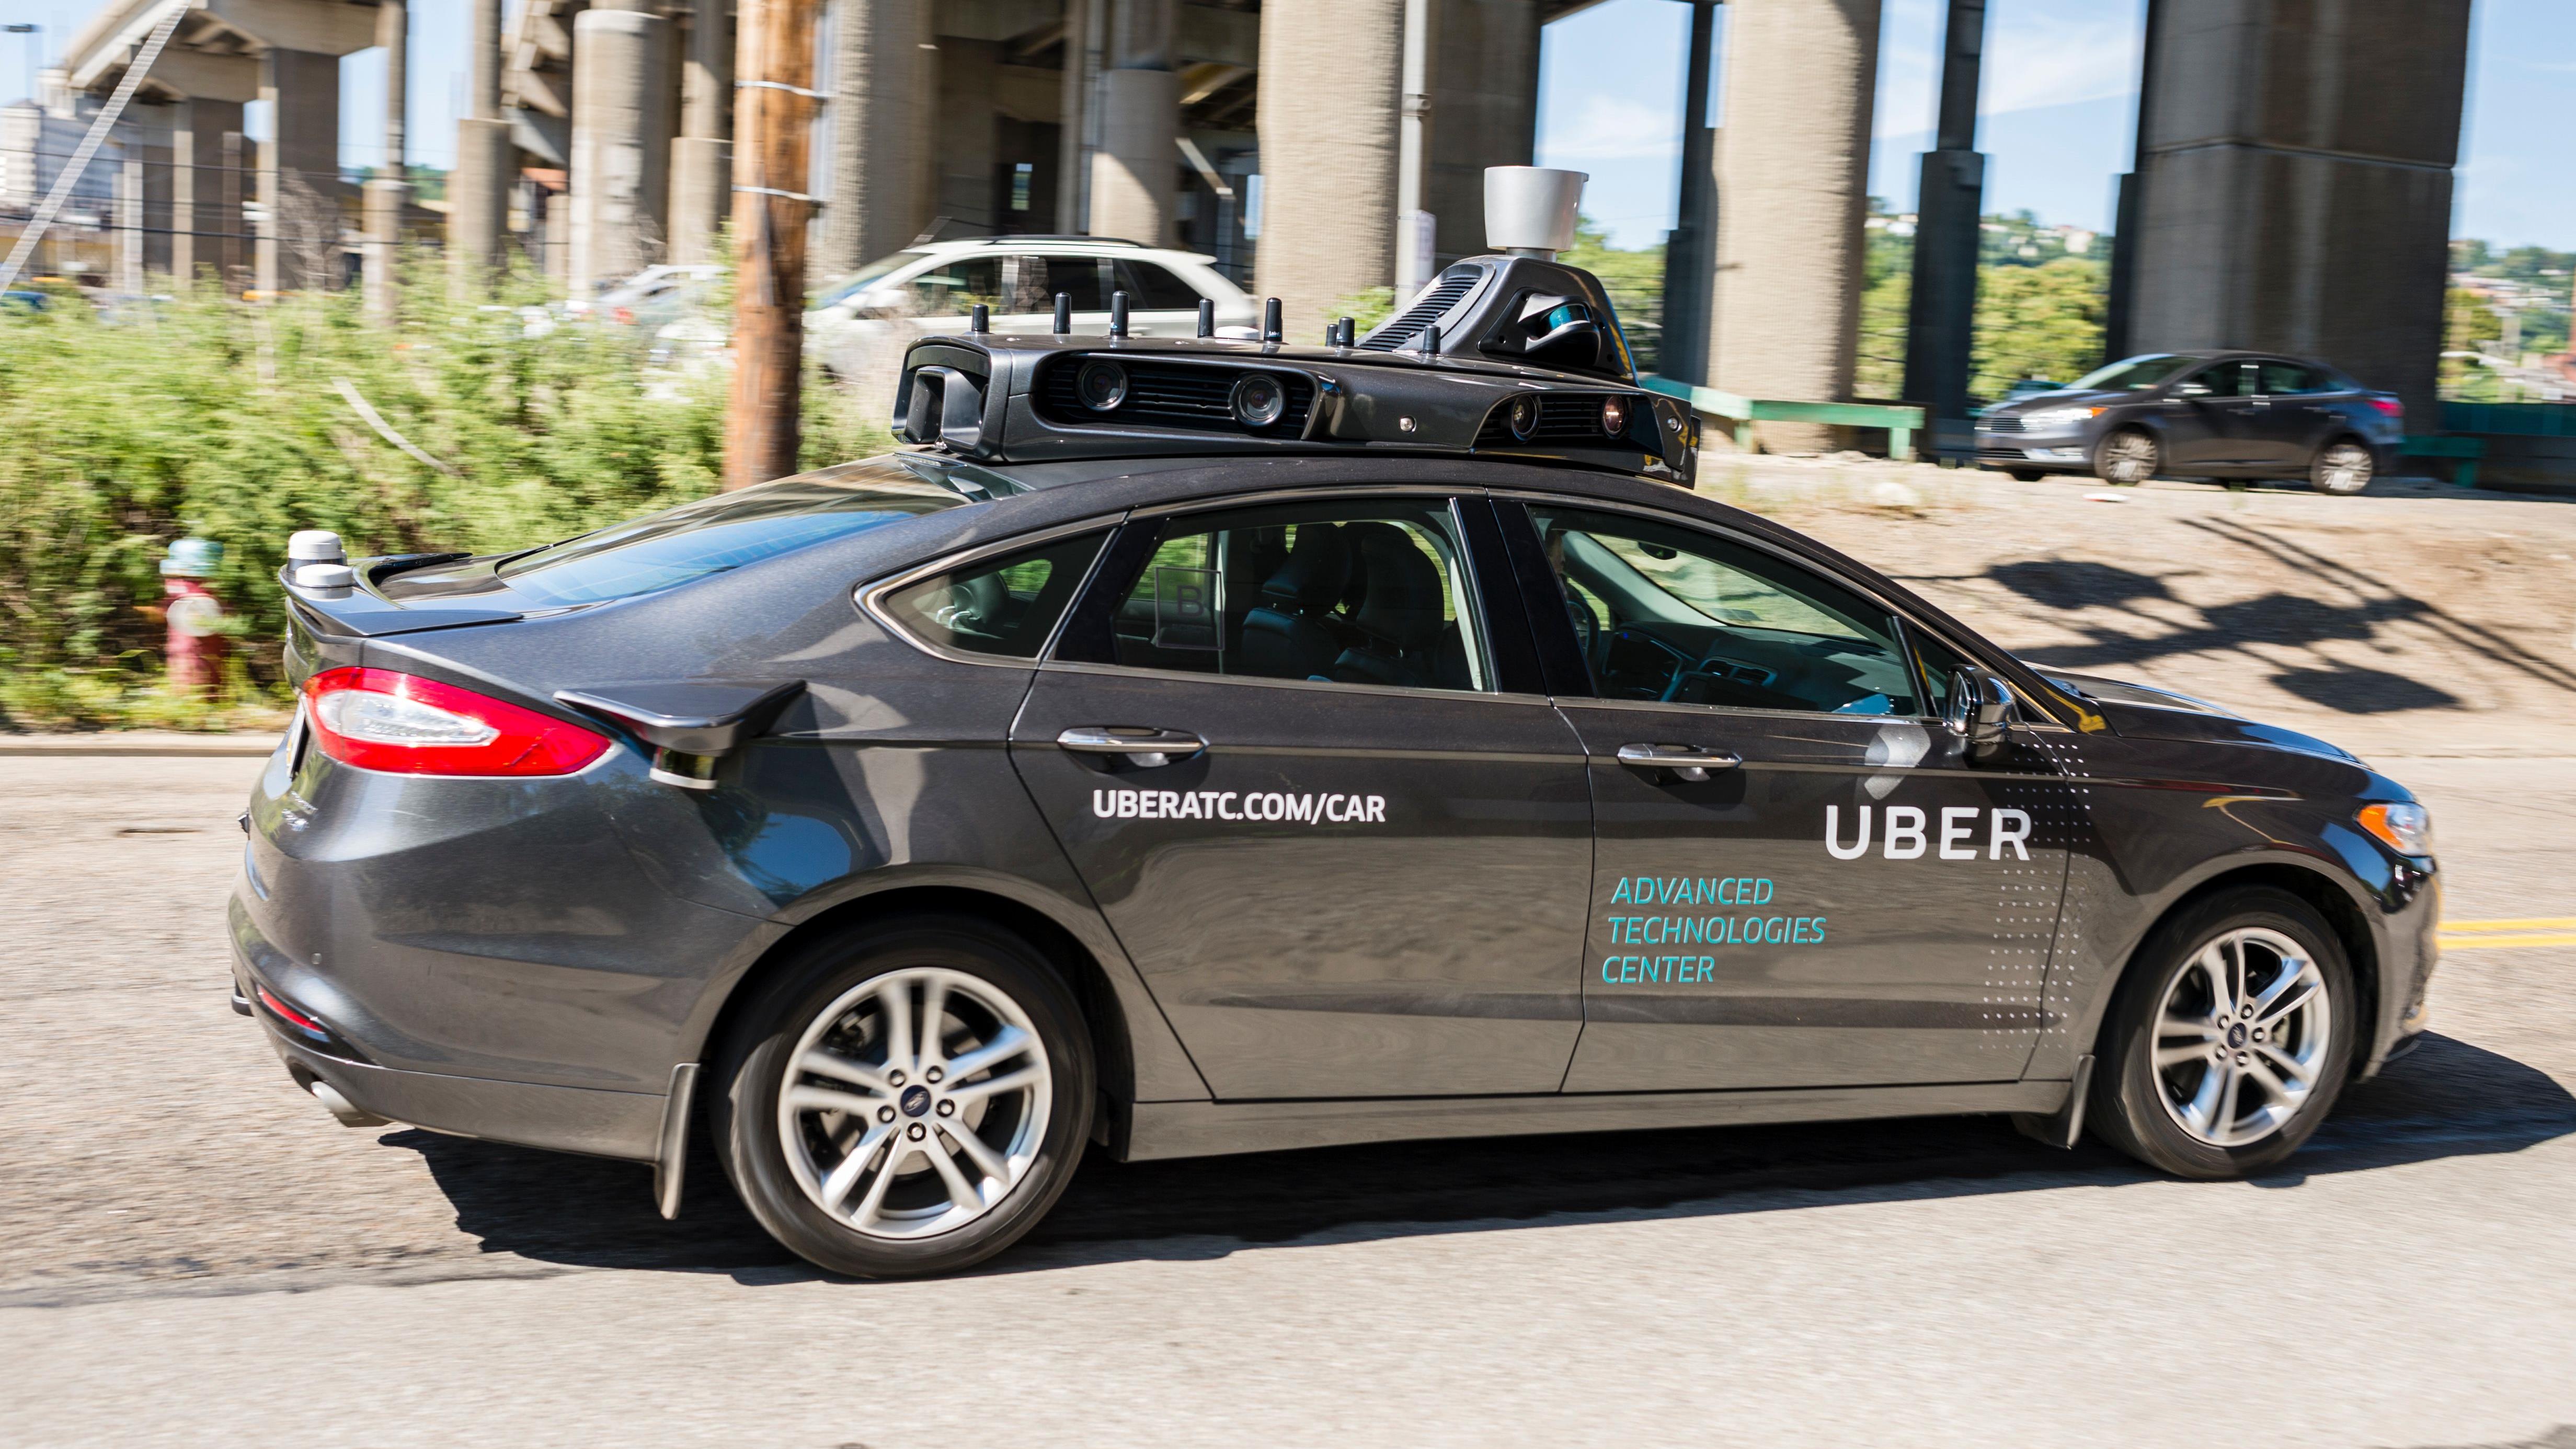 Uber suspend ses tests de conduite autonome après la mort d'une piétonne